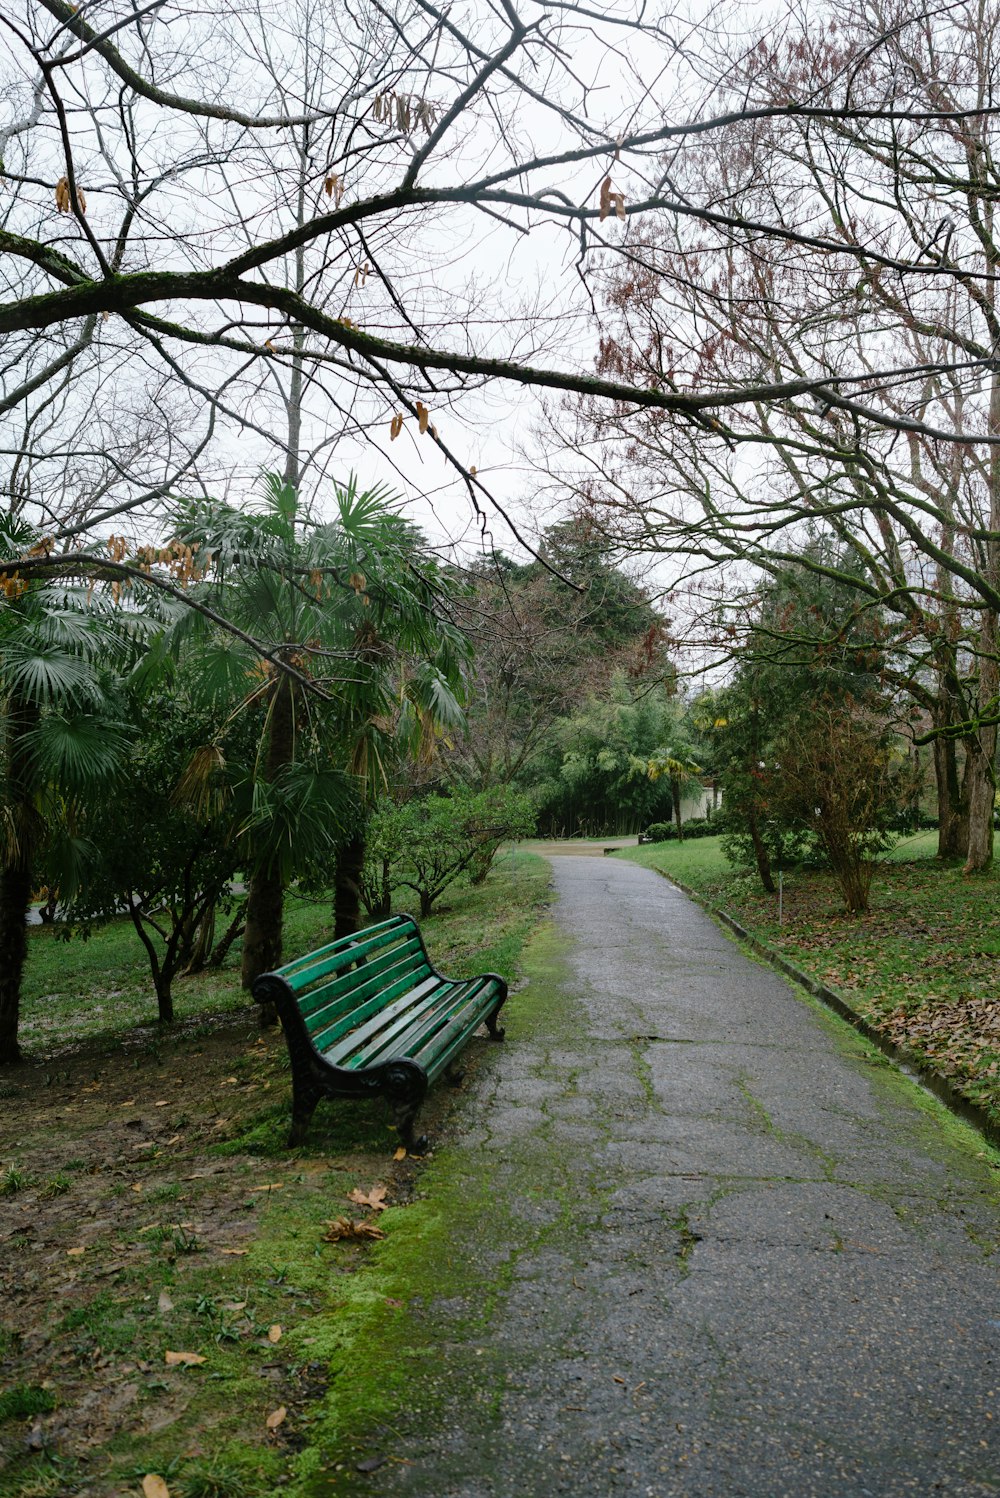 Una panchina verde del parco seduta sul lato di una strada